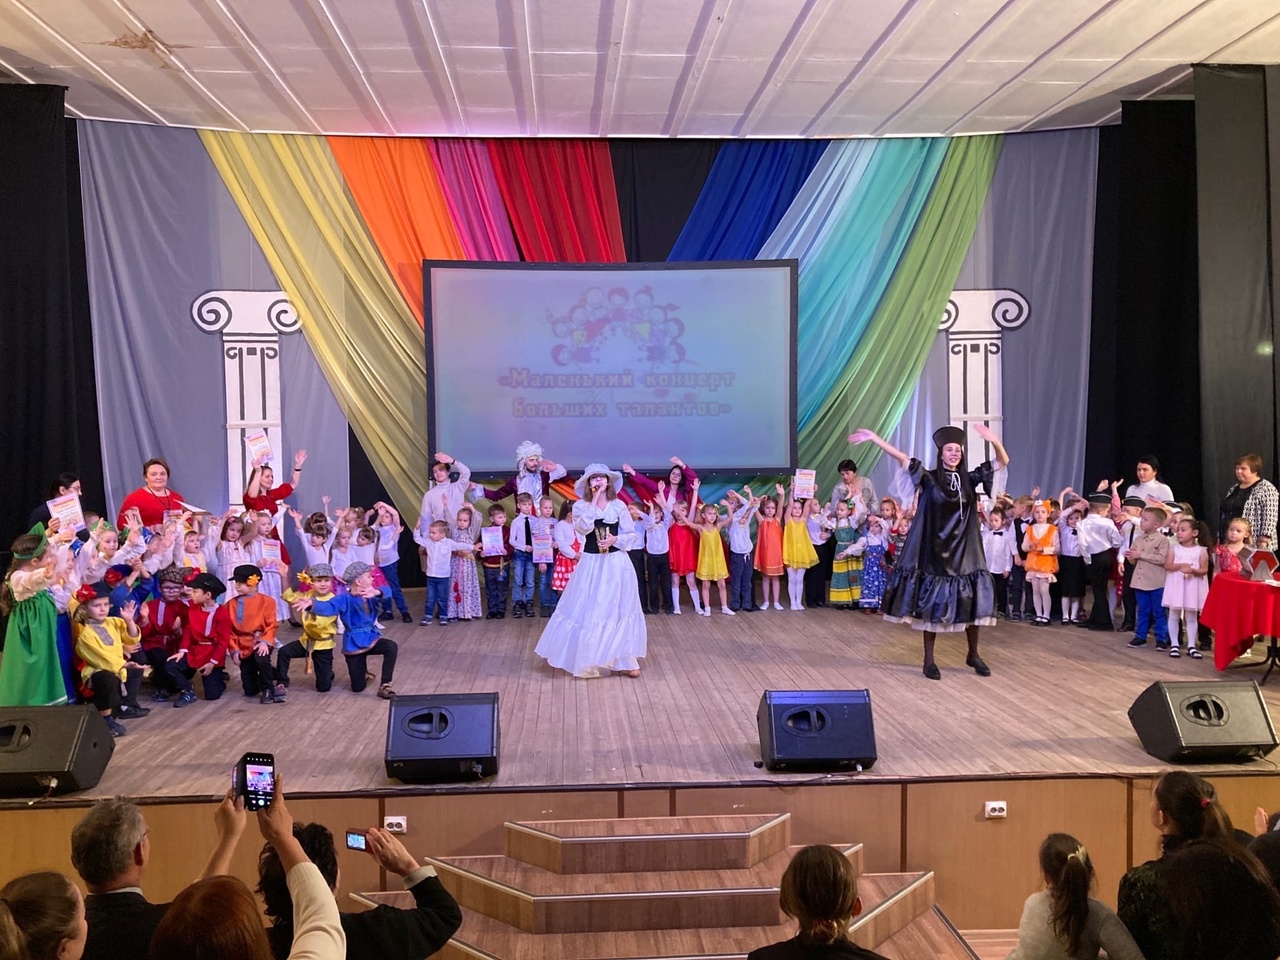 Маленький концерт больших талантов в культурном центре «Маймакса»